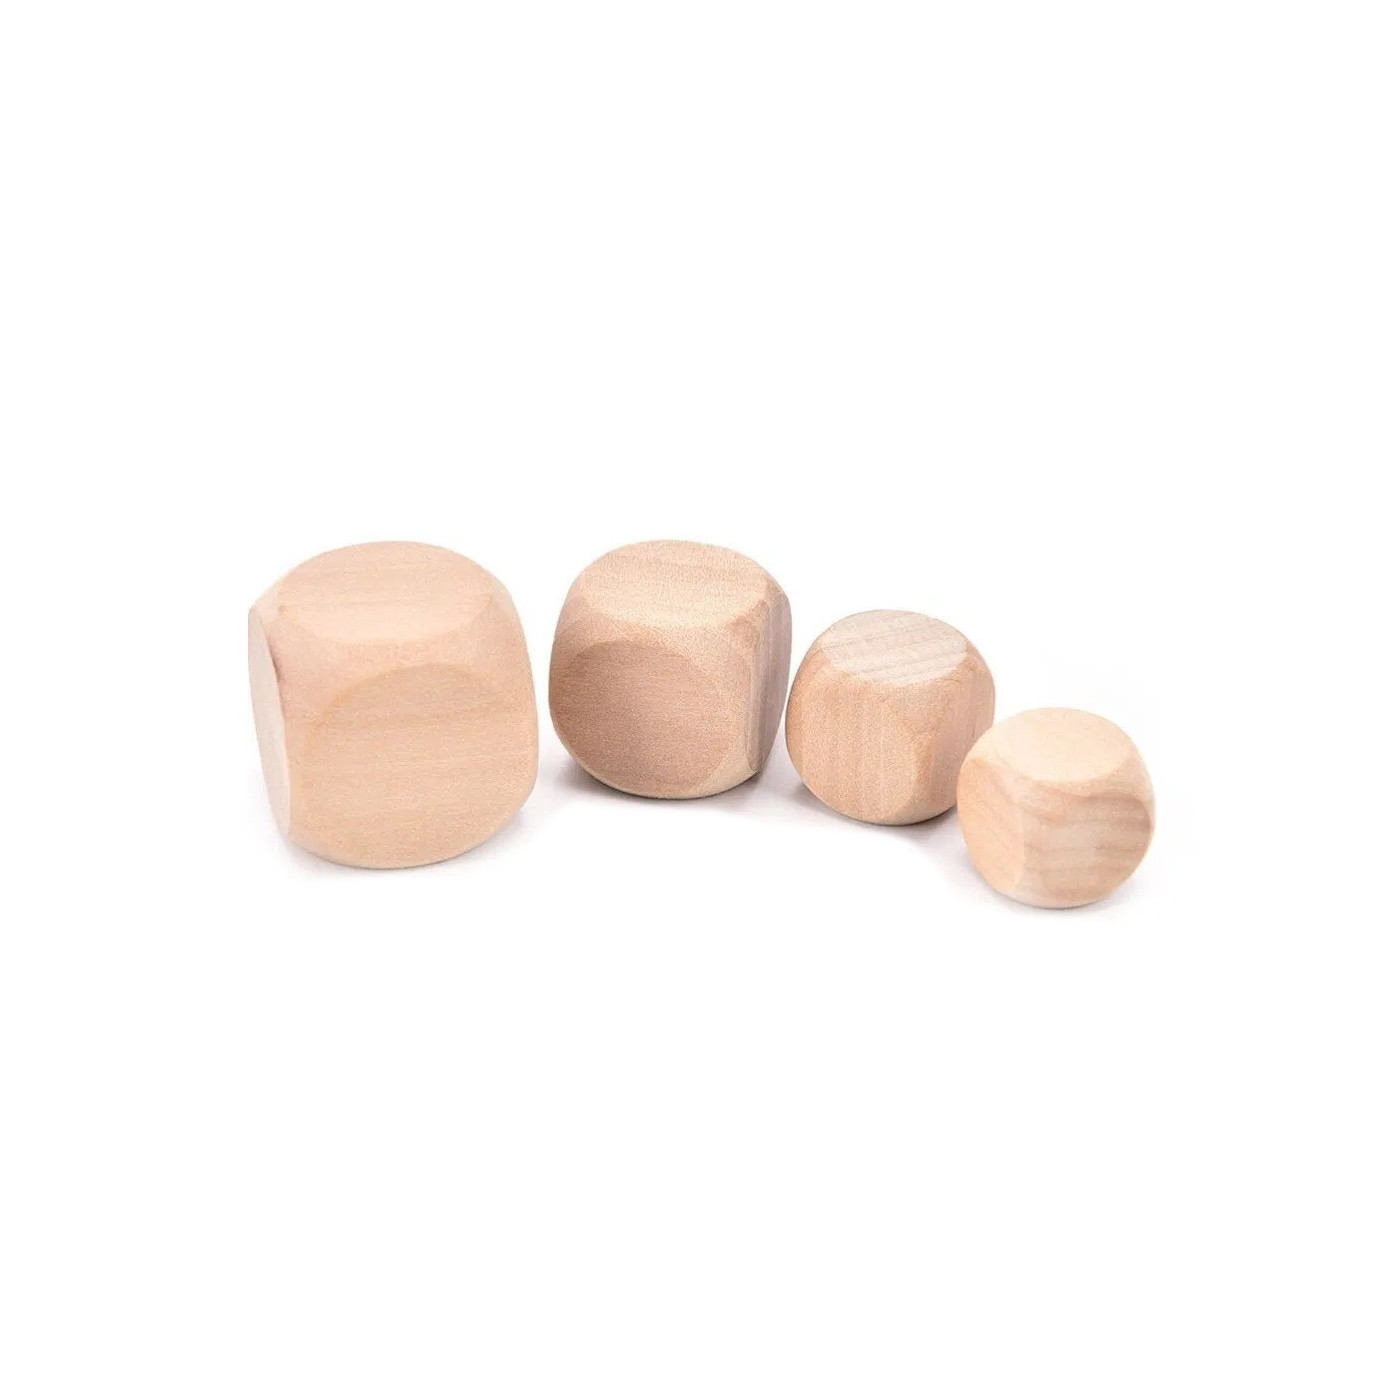 Zestaw 100 drewnianych kostek (kostki), rozmiar: średni (10 mm)